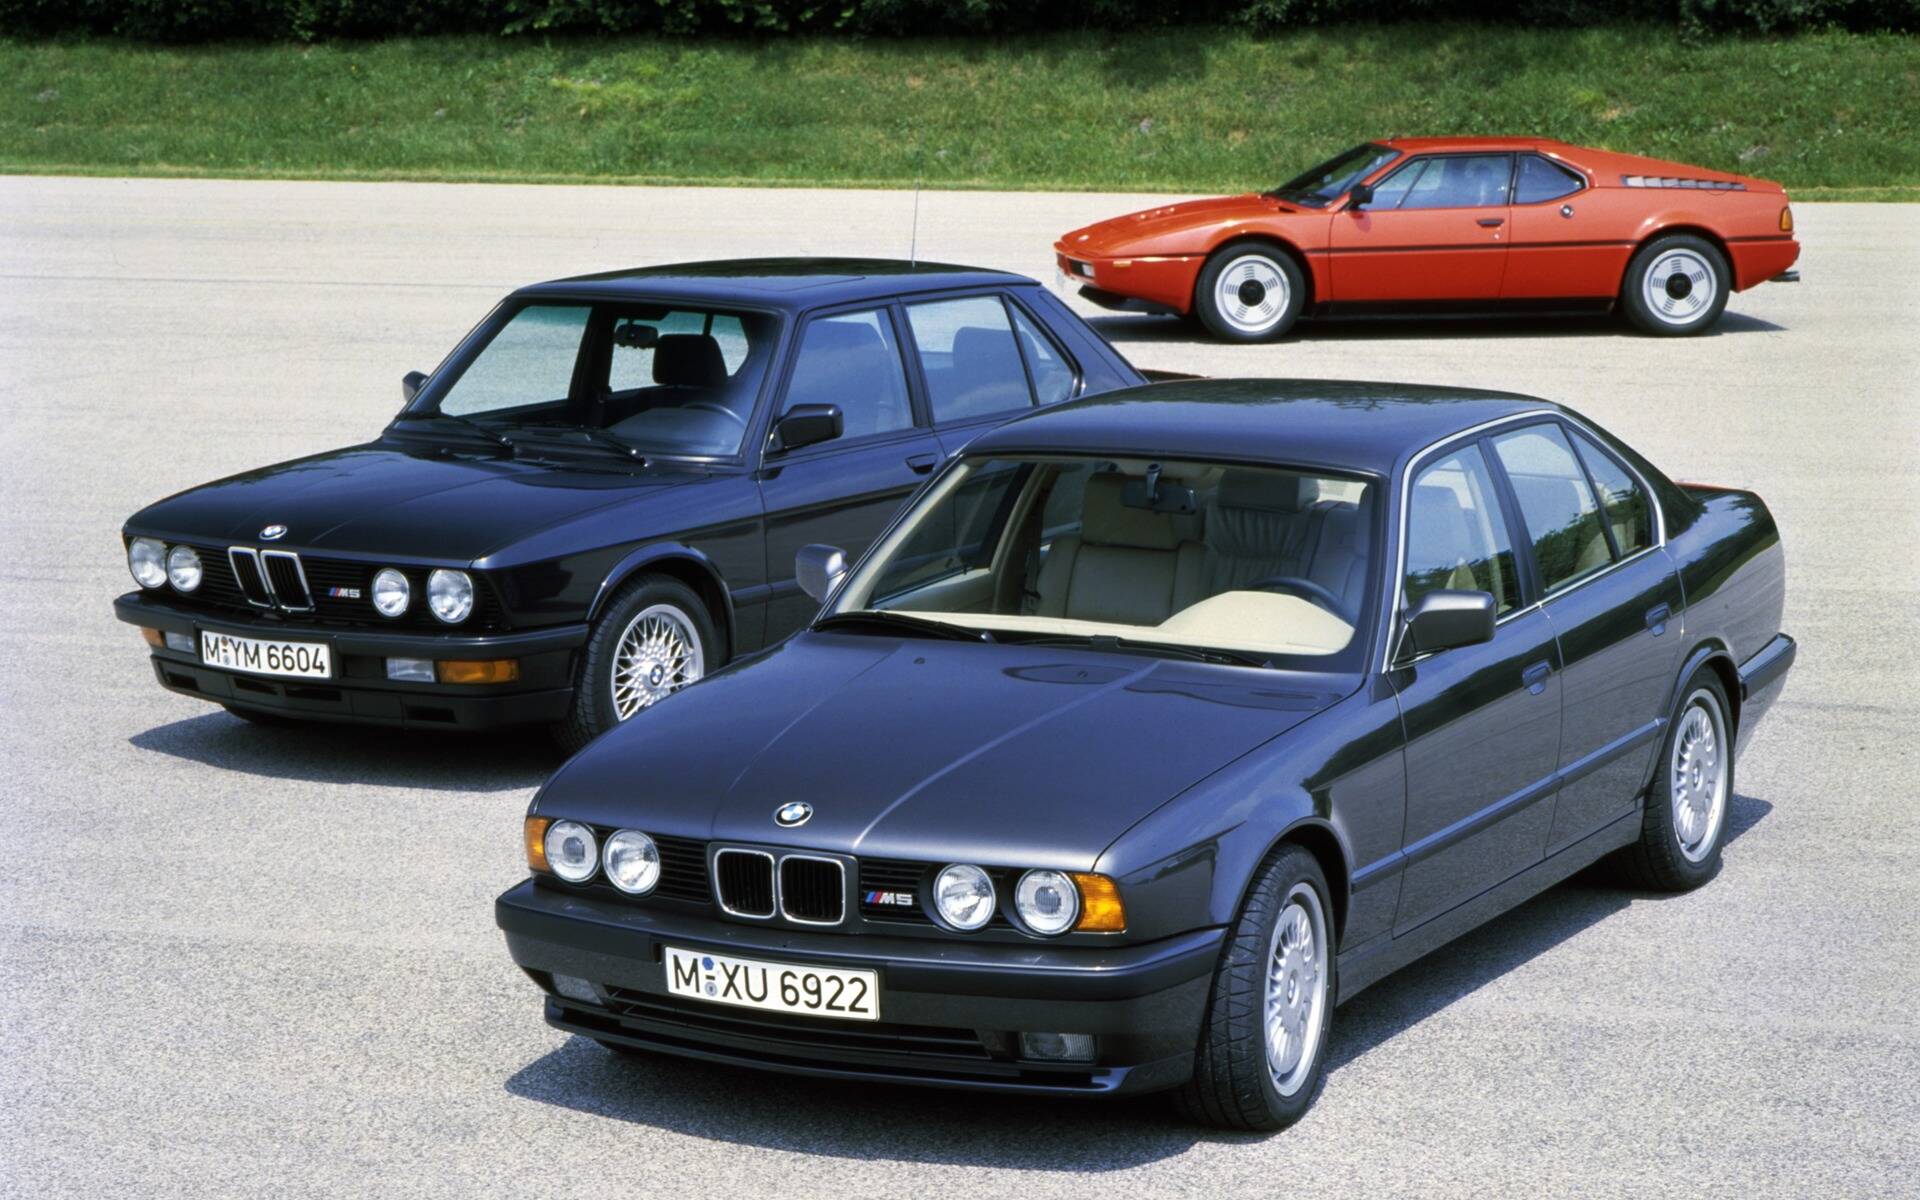 50 ans de voitures BMW M en images 527882-50-ans-de-voitures-bmw-m-en-images